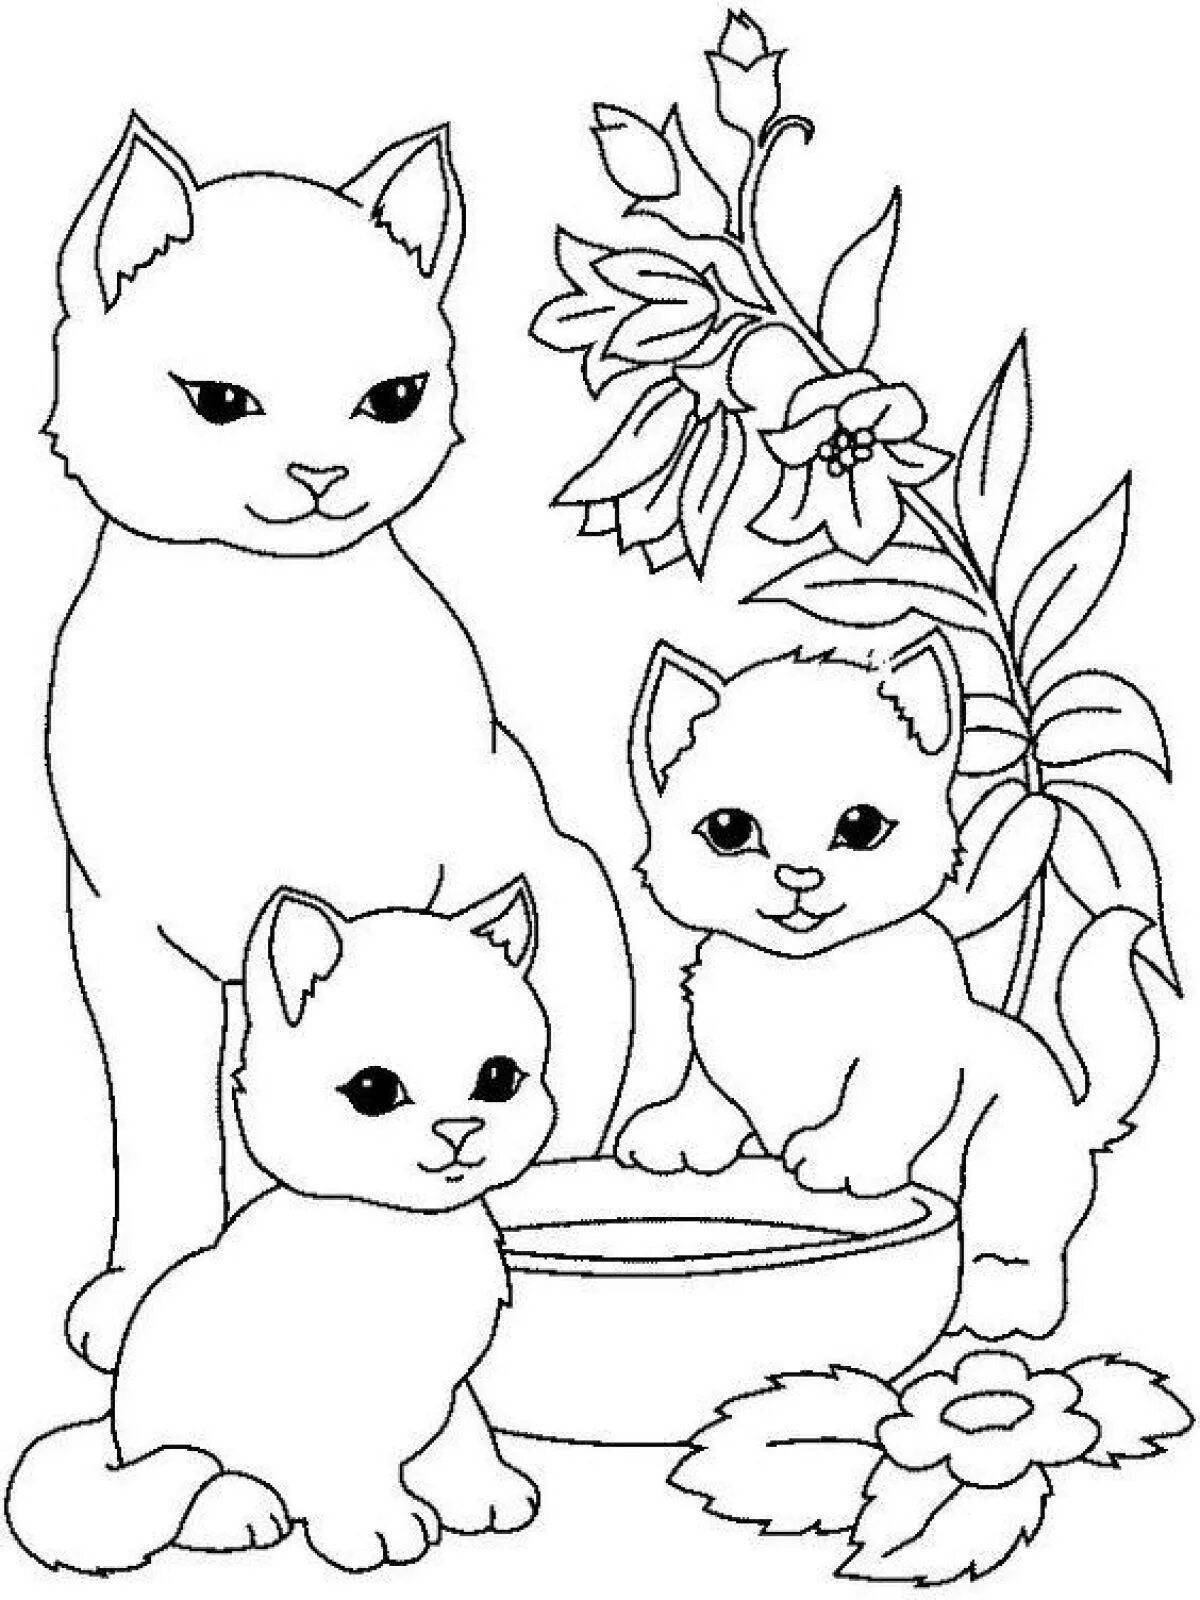 Уникальная раскраска для девочек с 9-летними животными